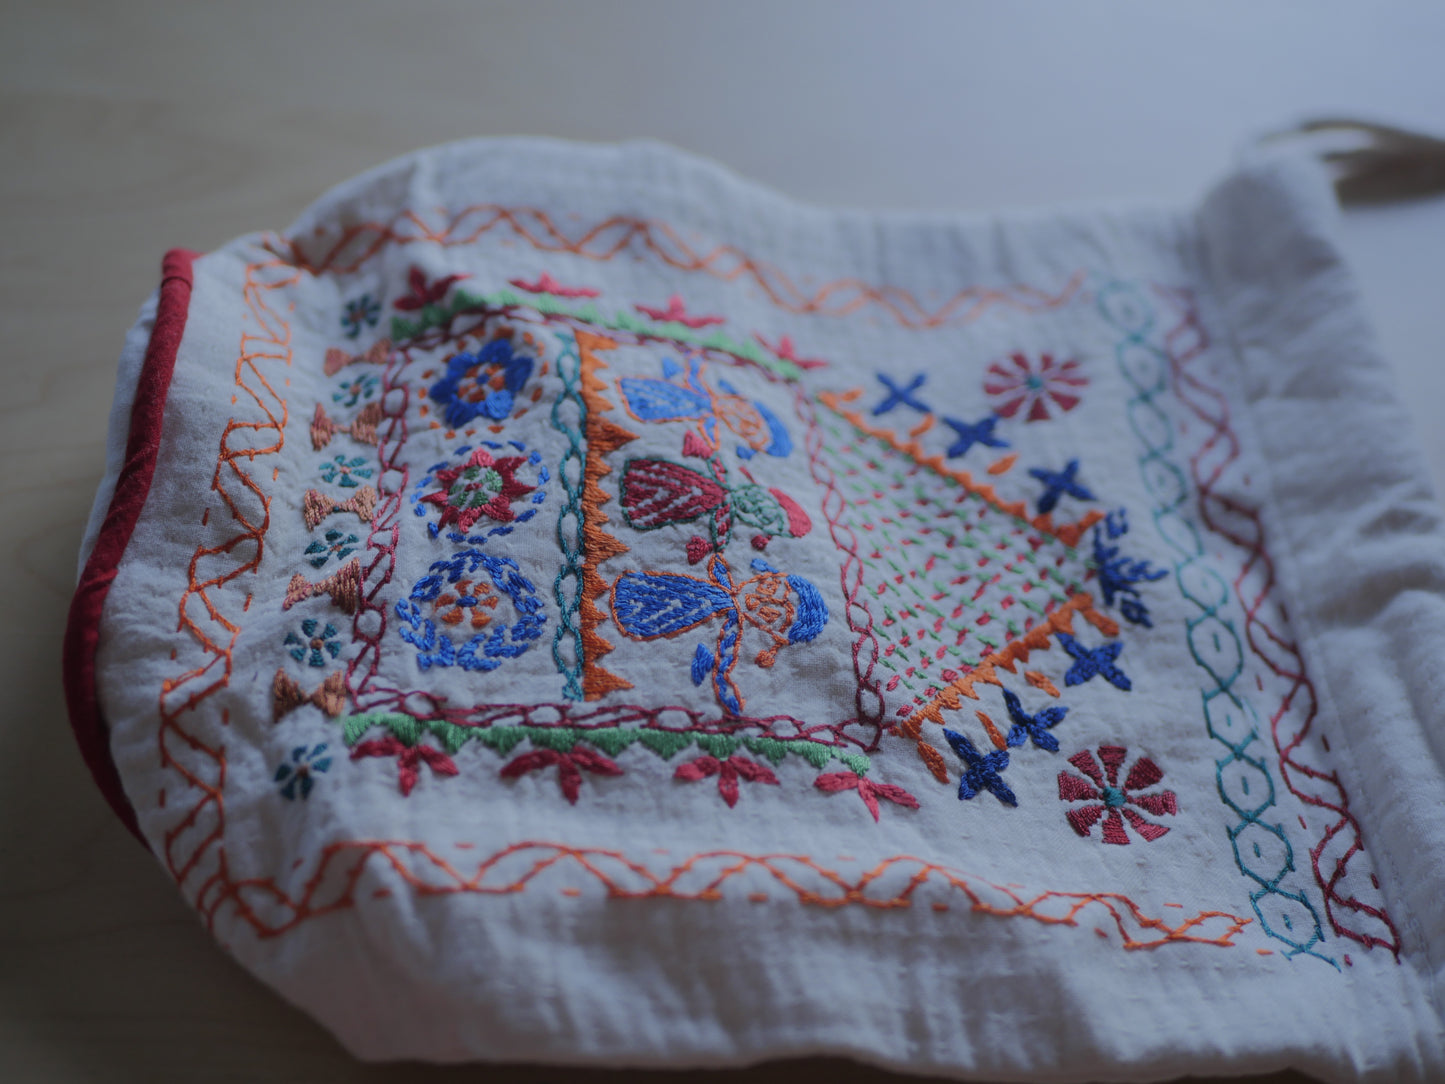 BONDHURA // medium embroidered pouch